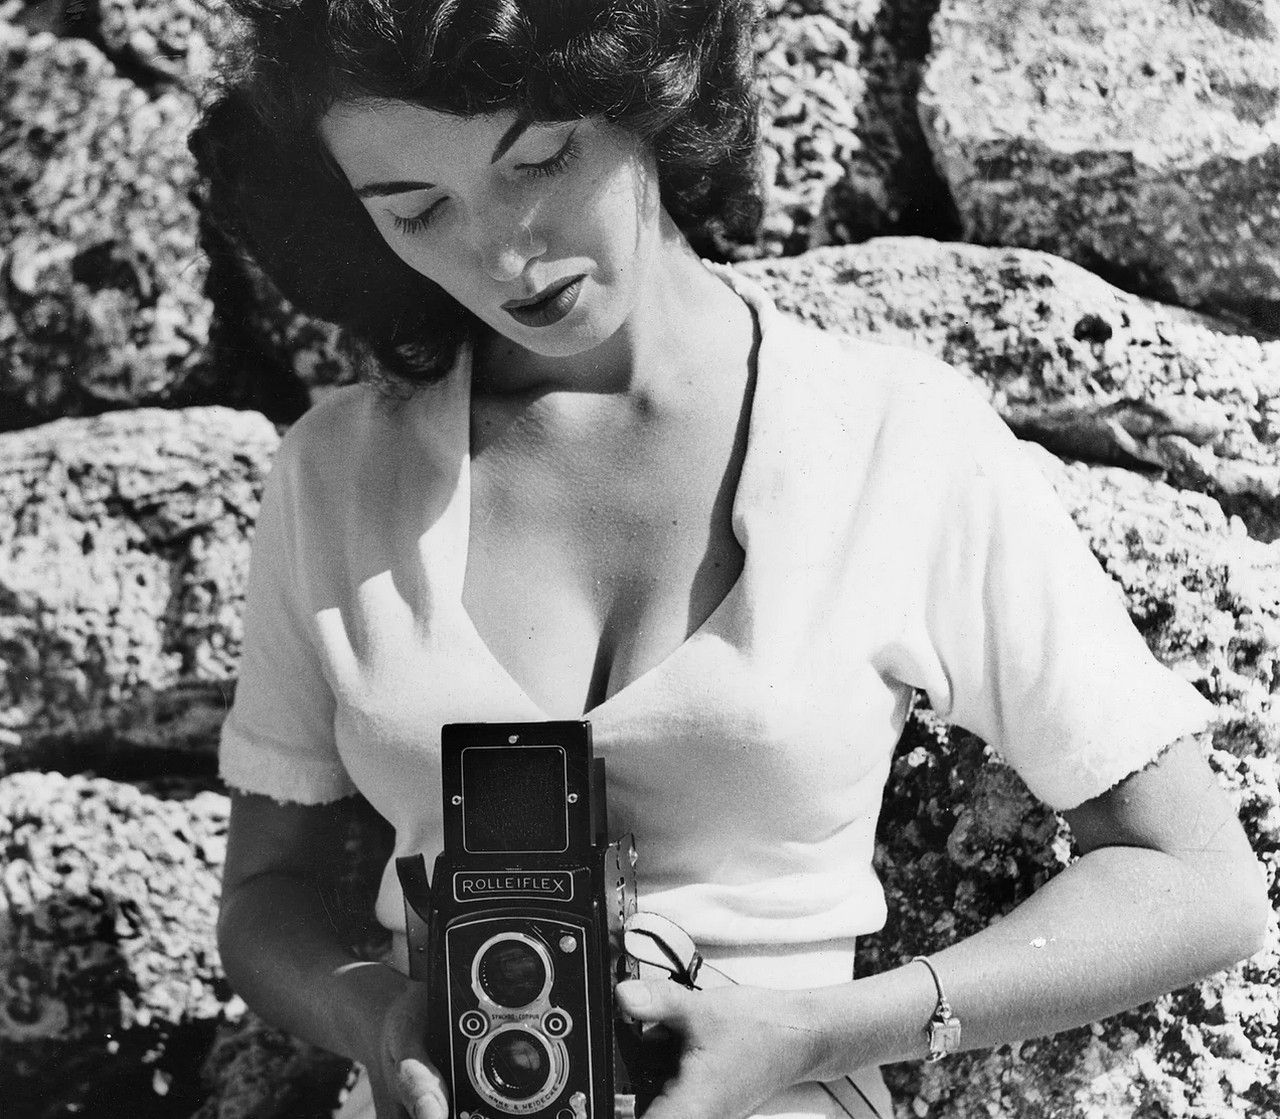 Банни Йеджер со своей фотокамерой Rolleiflex